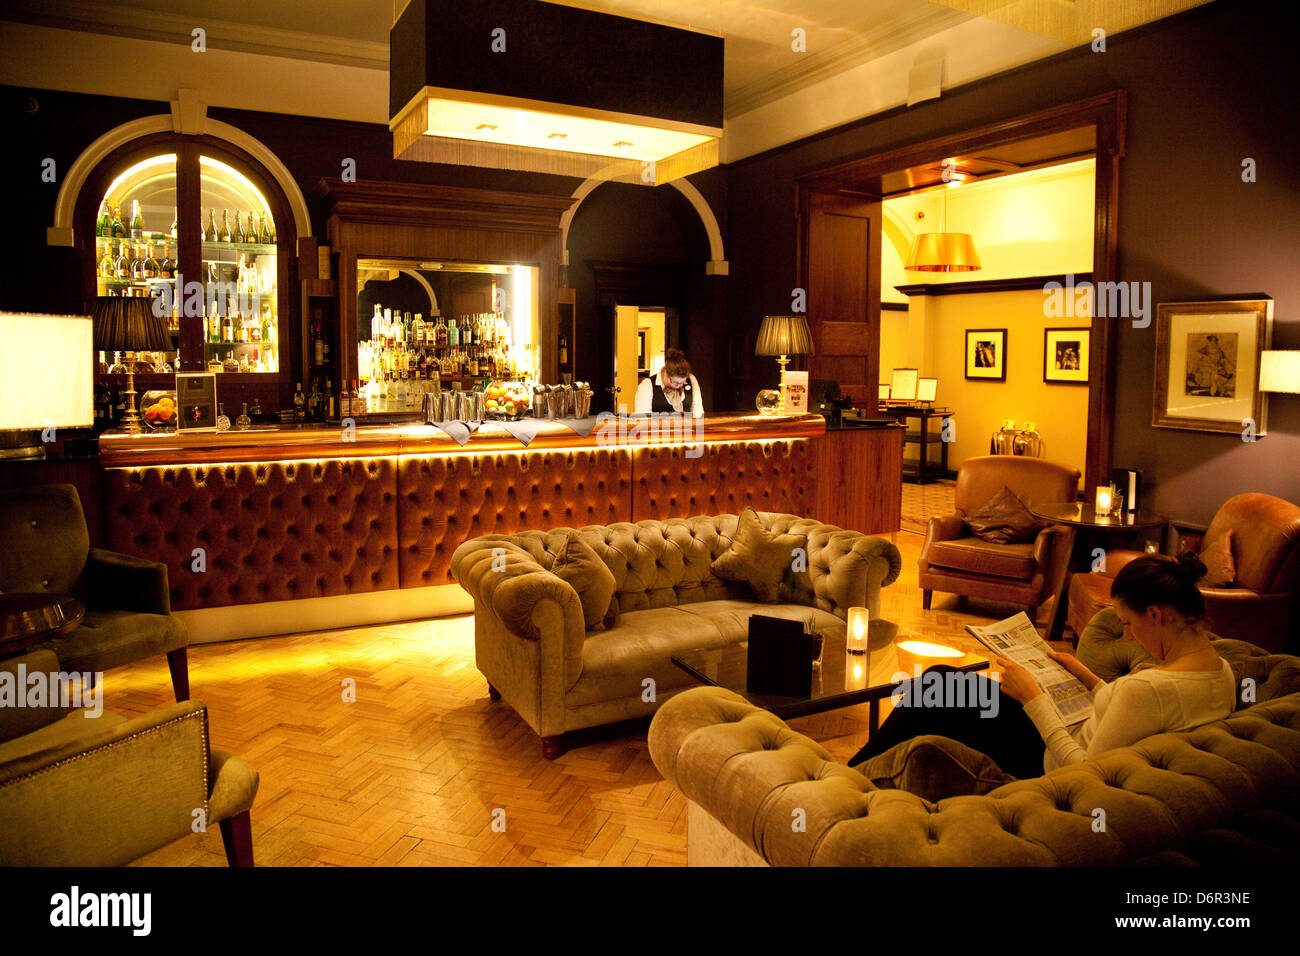 Le Whiskey Bar lounge, le 5 étoiles de luxe Grand Hotel, York, Yorkshire UK Banque D'Images